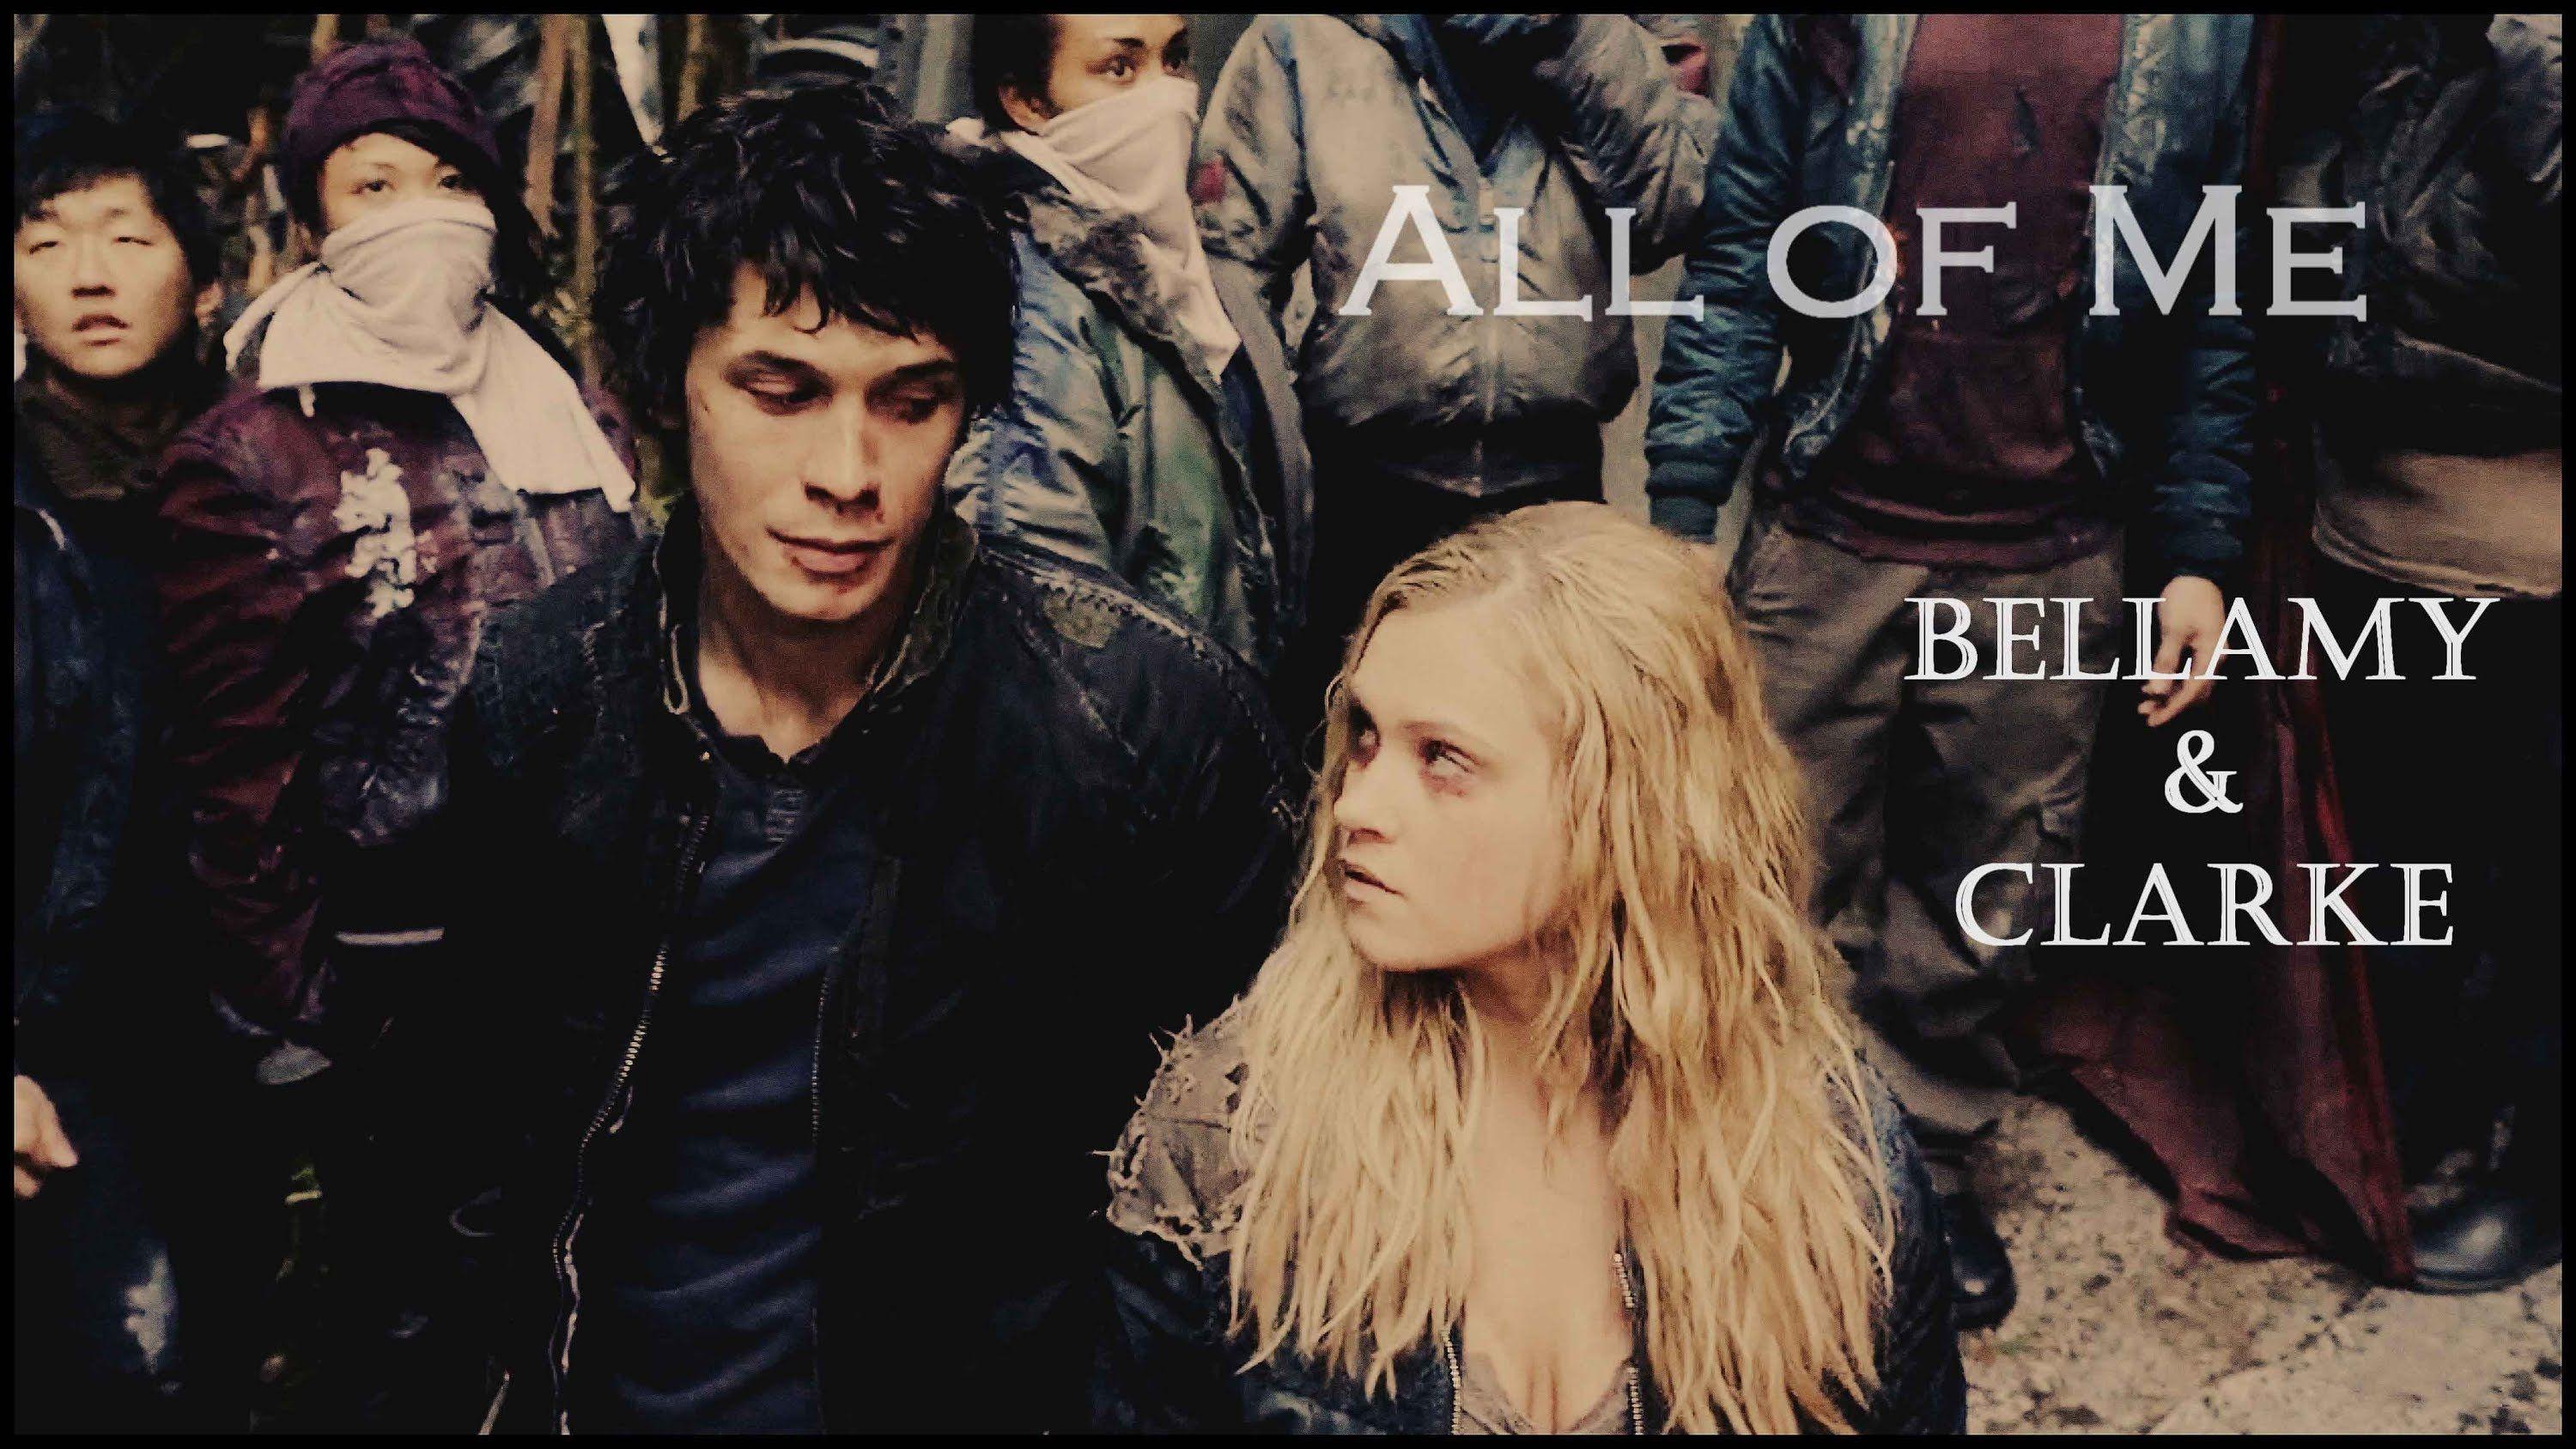 Bellamy & Clarke. All of Me